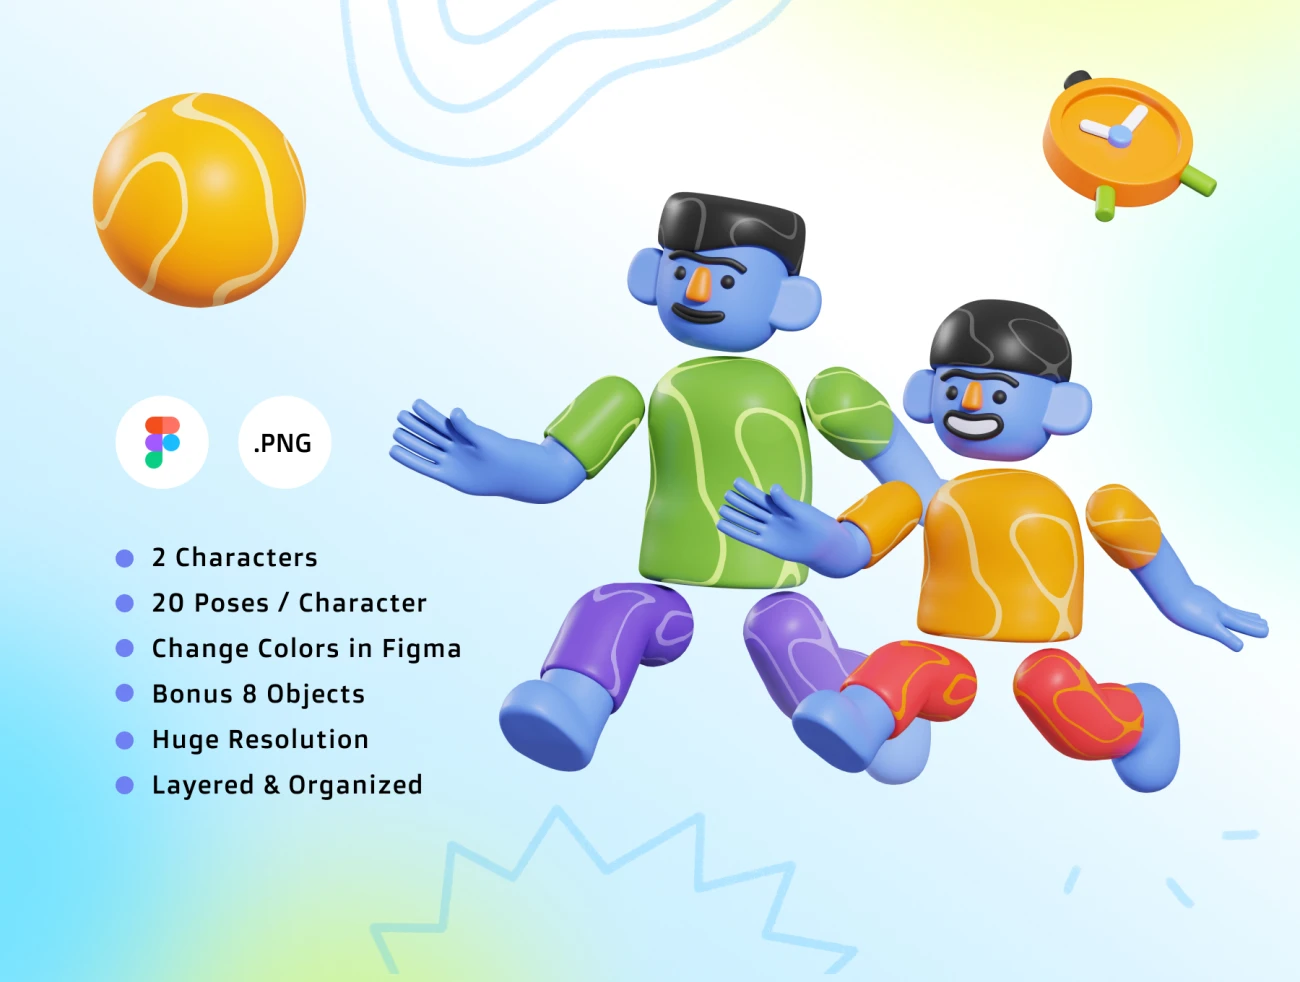 MaBro - 3D Illustrations 20个姿势趣味3D插图包-3D/图标、人物插画、动画展示、场景插画、学习生活、插画、插画风格、概念创意、模块化套件、状态页、趣味漫画-到位啦UI